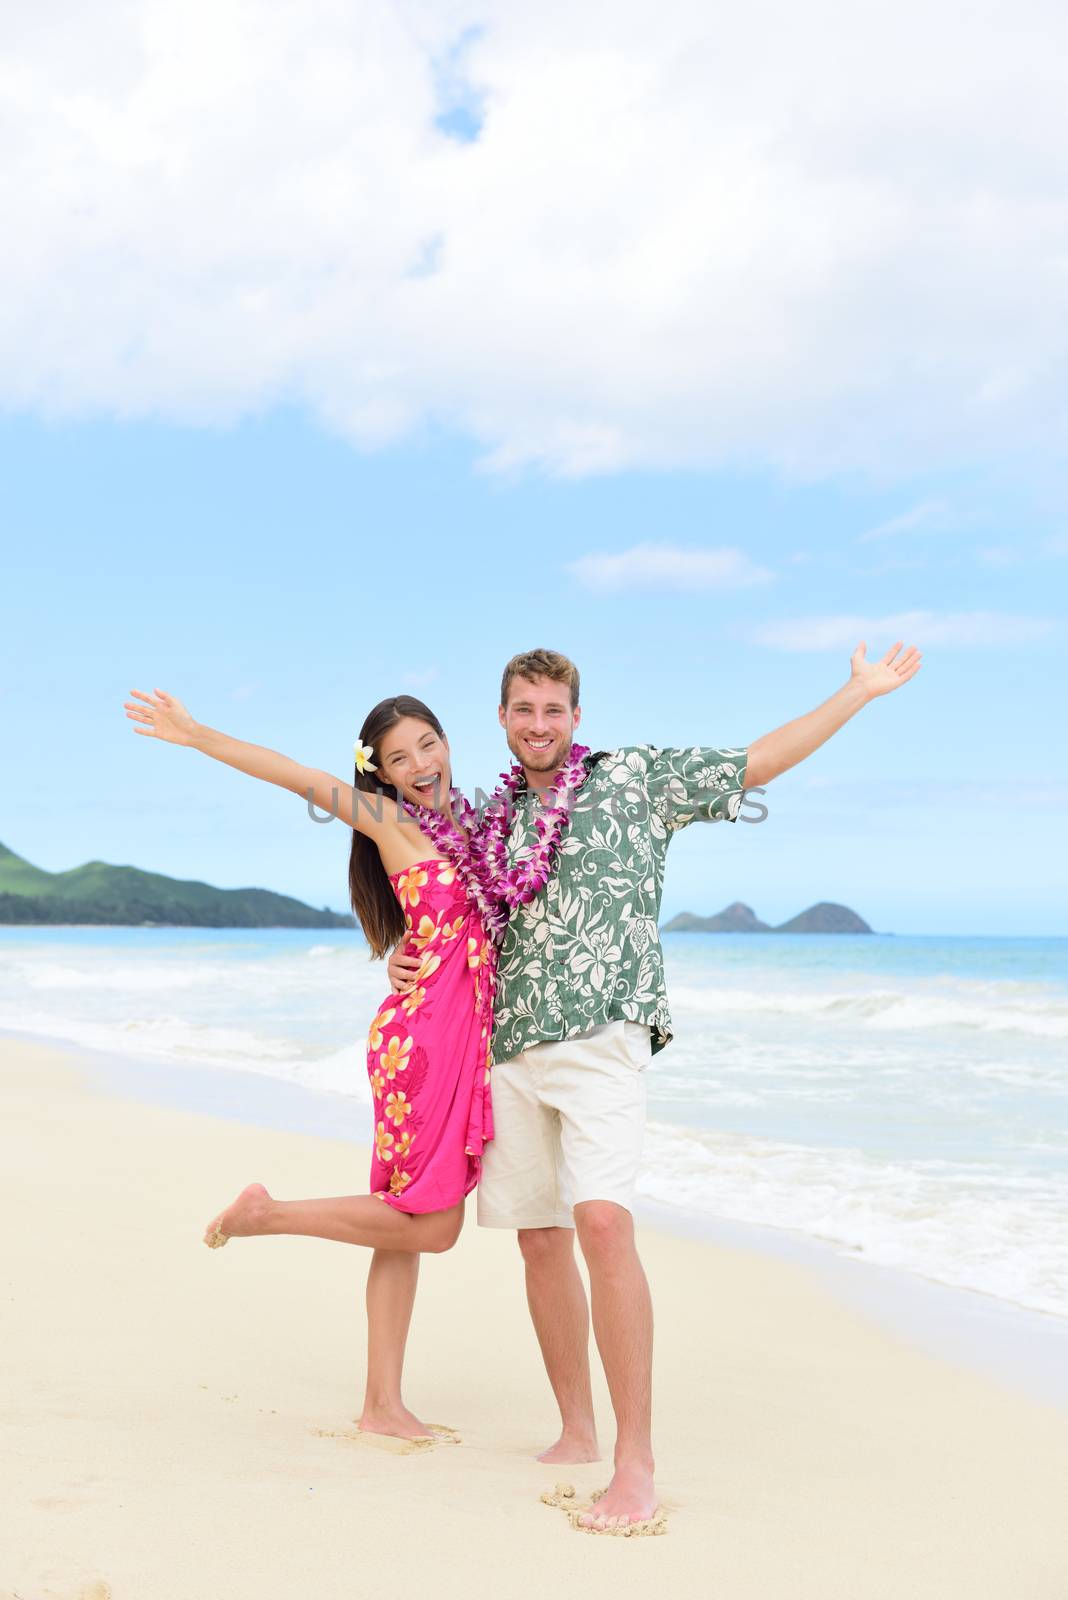 Happy Hawaii fun couple on beach holiday in Hawaii by Maridav